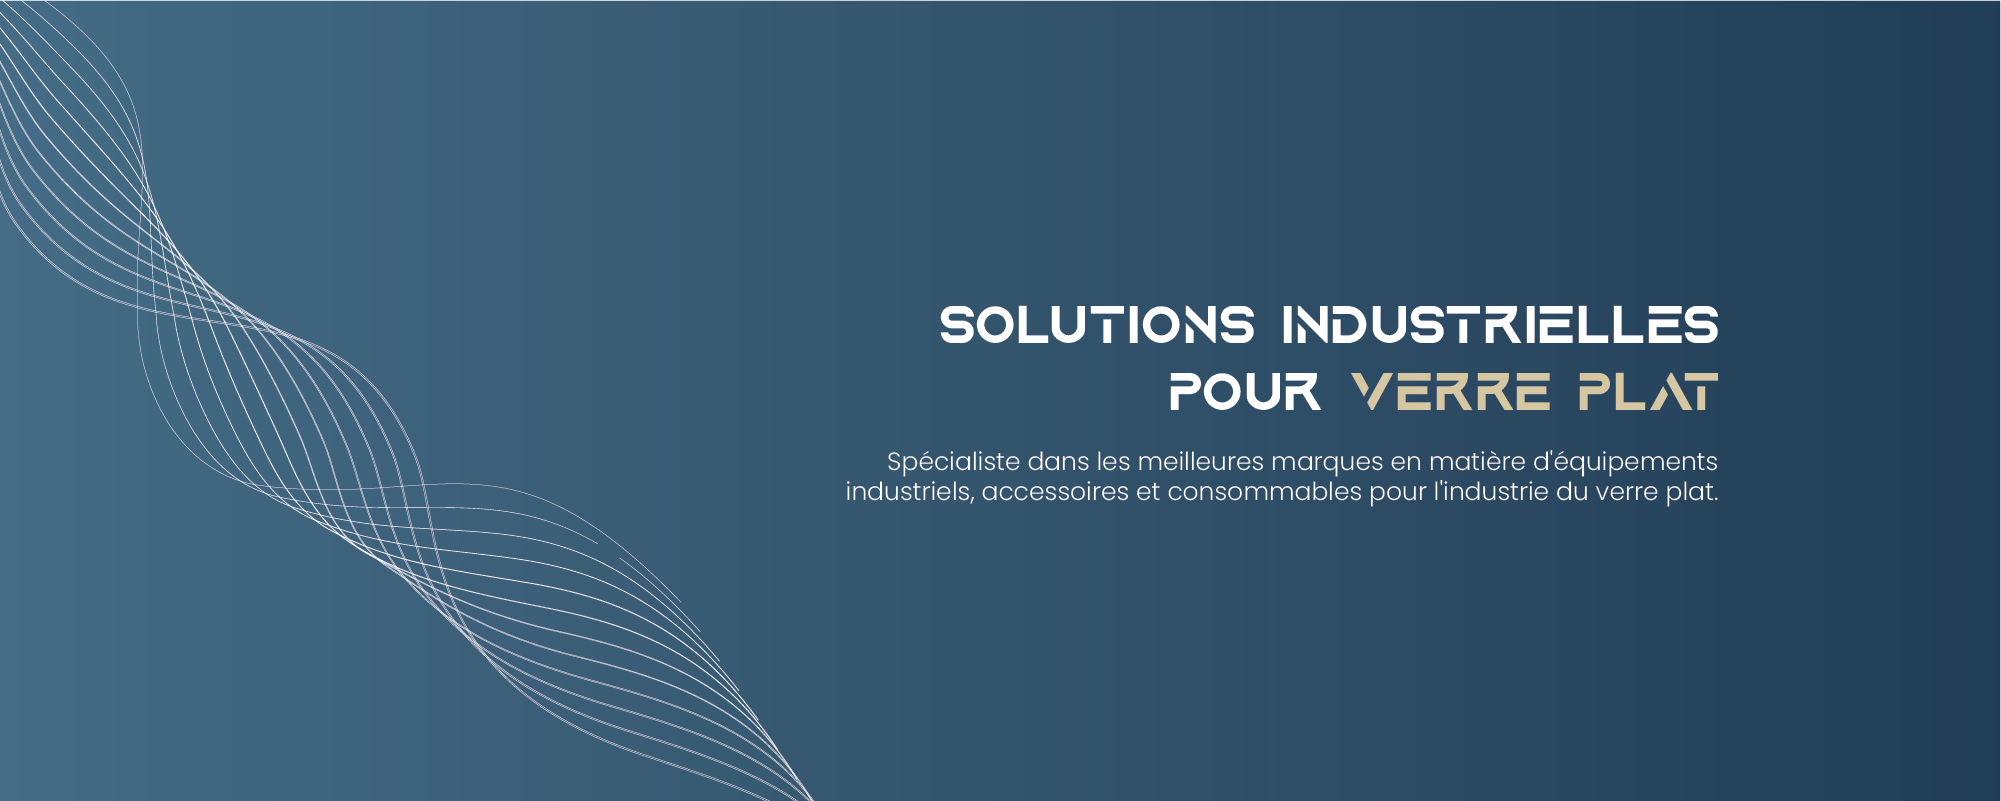 Accueil Solutions industrielles pour verre plat